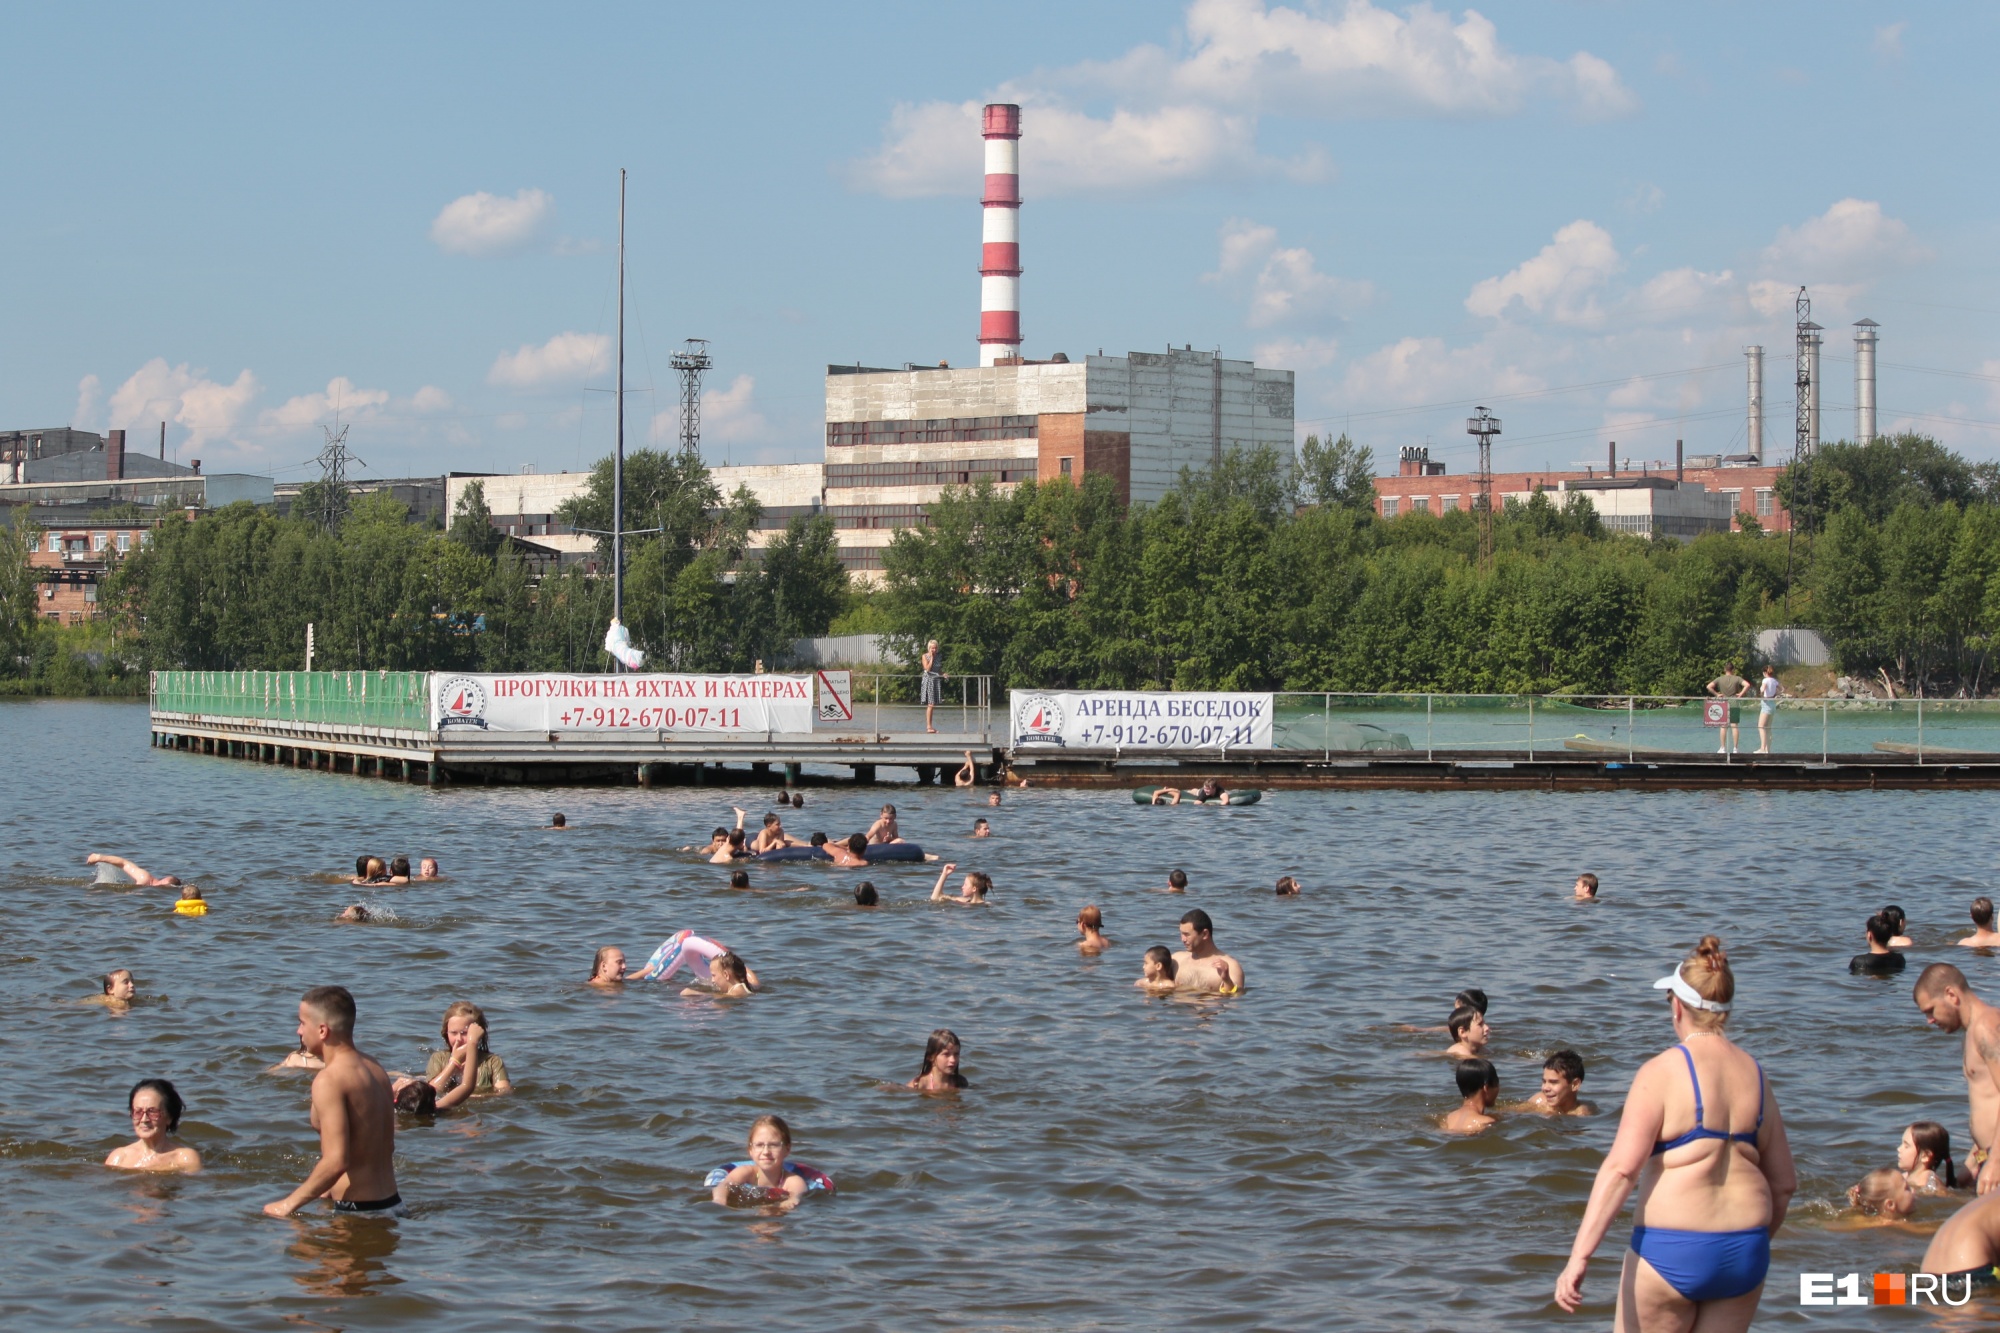 Визовский пруд — единственное место в городе, где можно купаться, несмотря на пейзажи завода